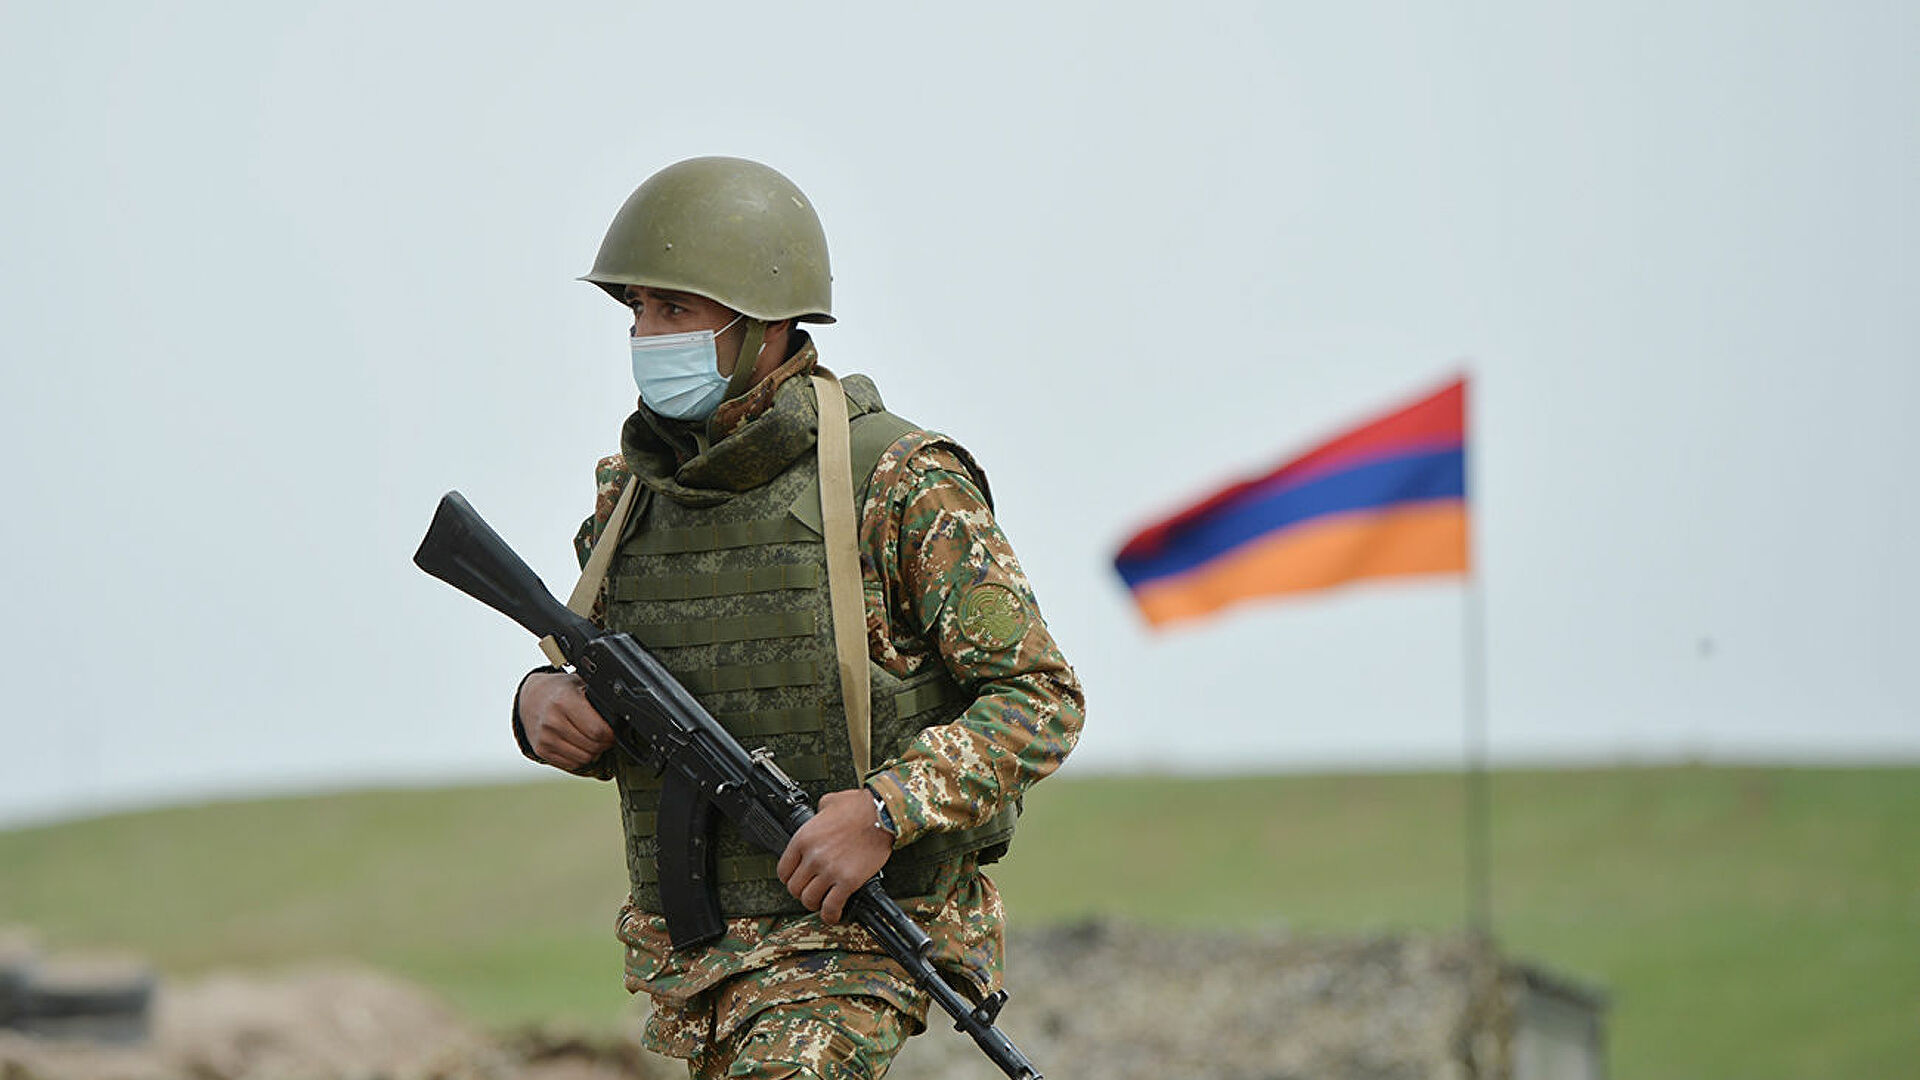 ВС Азербайджана открыли огонь в направлении машины тылового обеспечения (водовоз) N-й войсковой части Министерства обороны РА